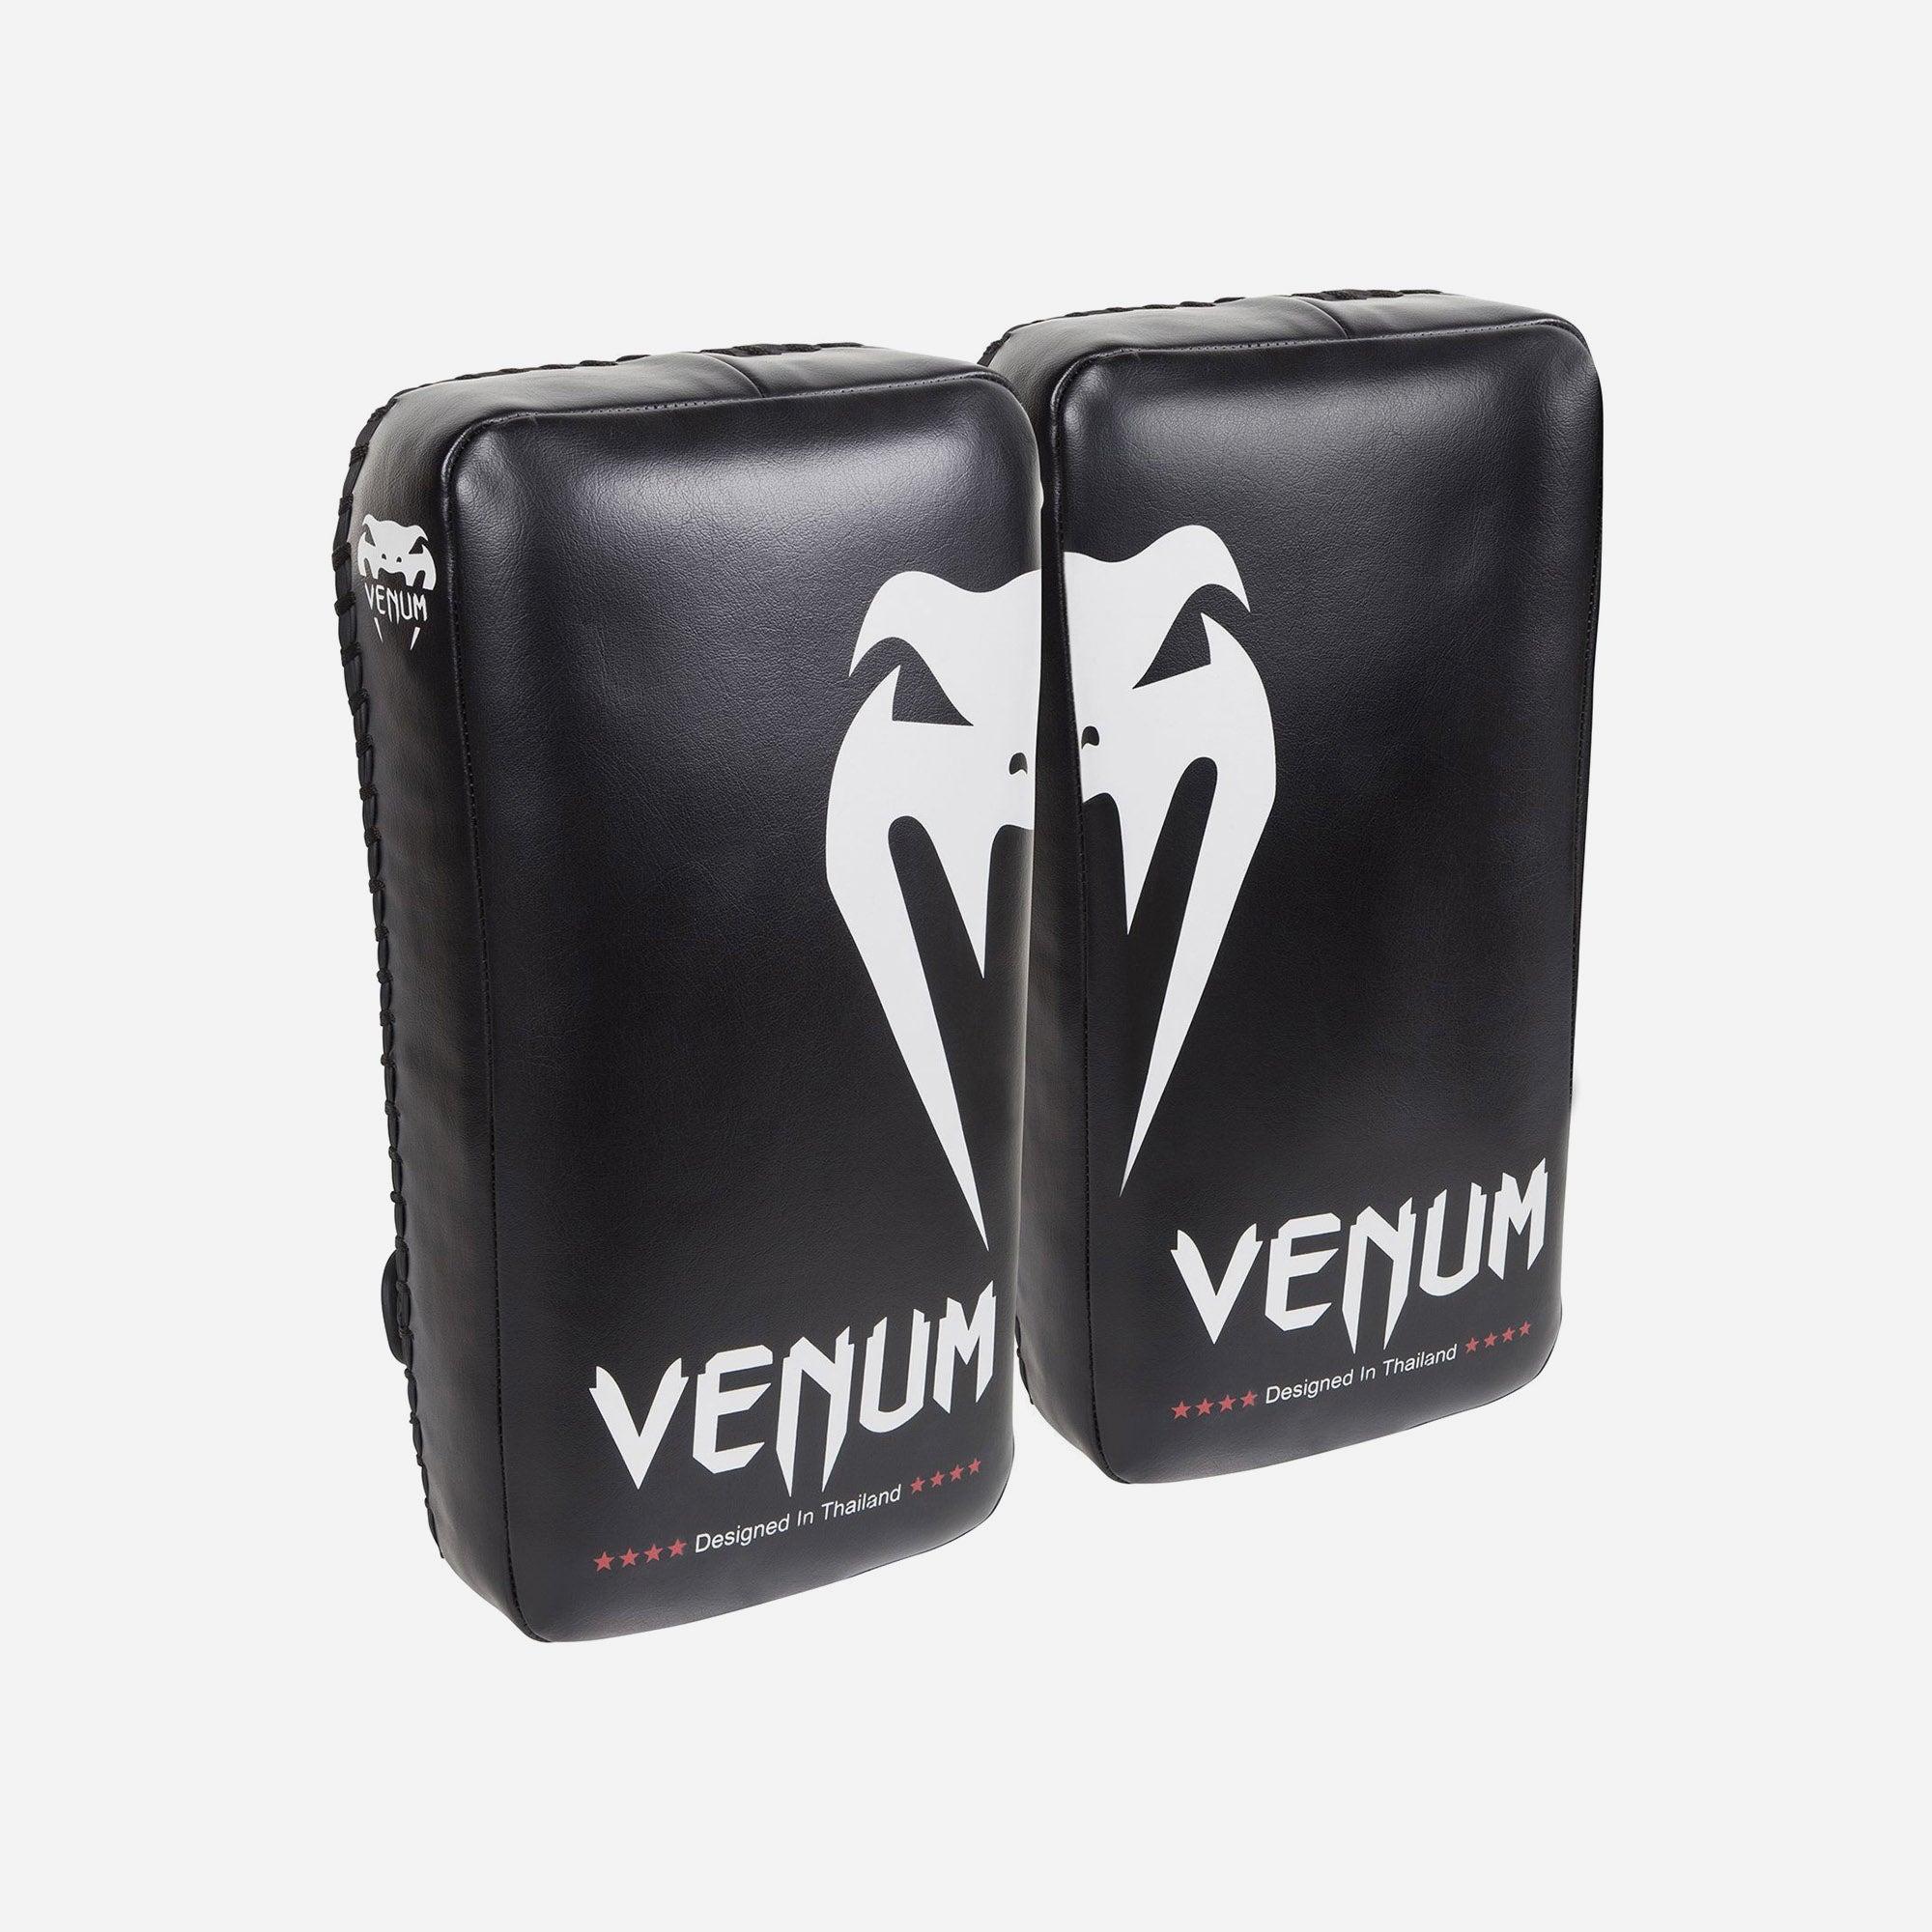 Đích đấm đá tập luyện Venum Giant Kick Pads (Pair)-Black/Ice - EU-VENUM-1120